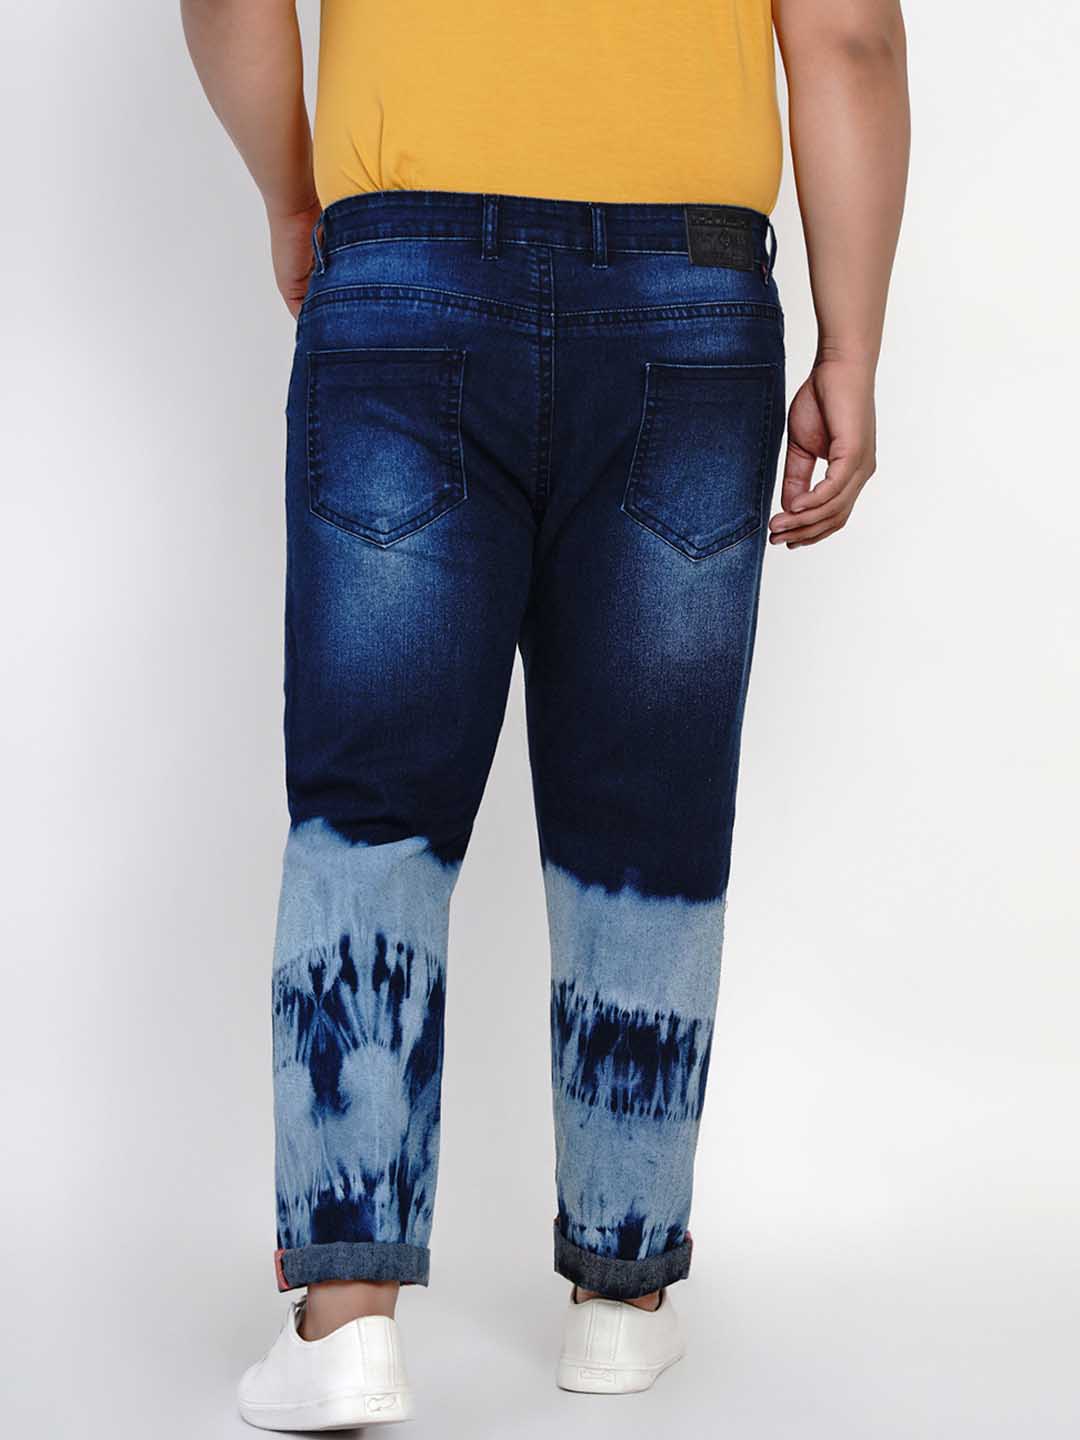 bottomwear/jeans/JPJ6005/jpj6005-4.jpg